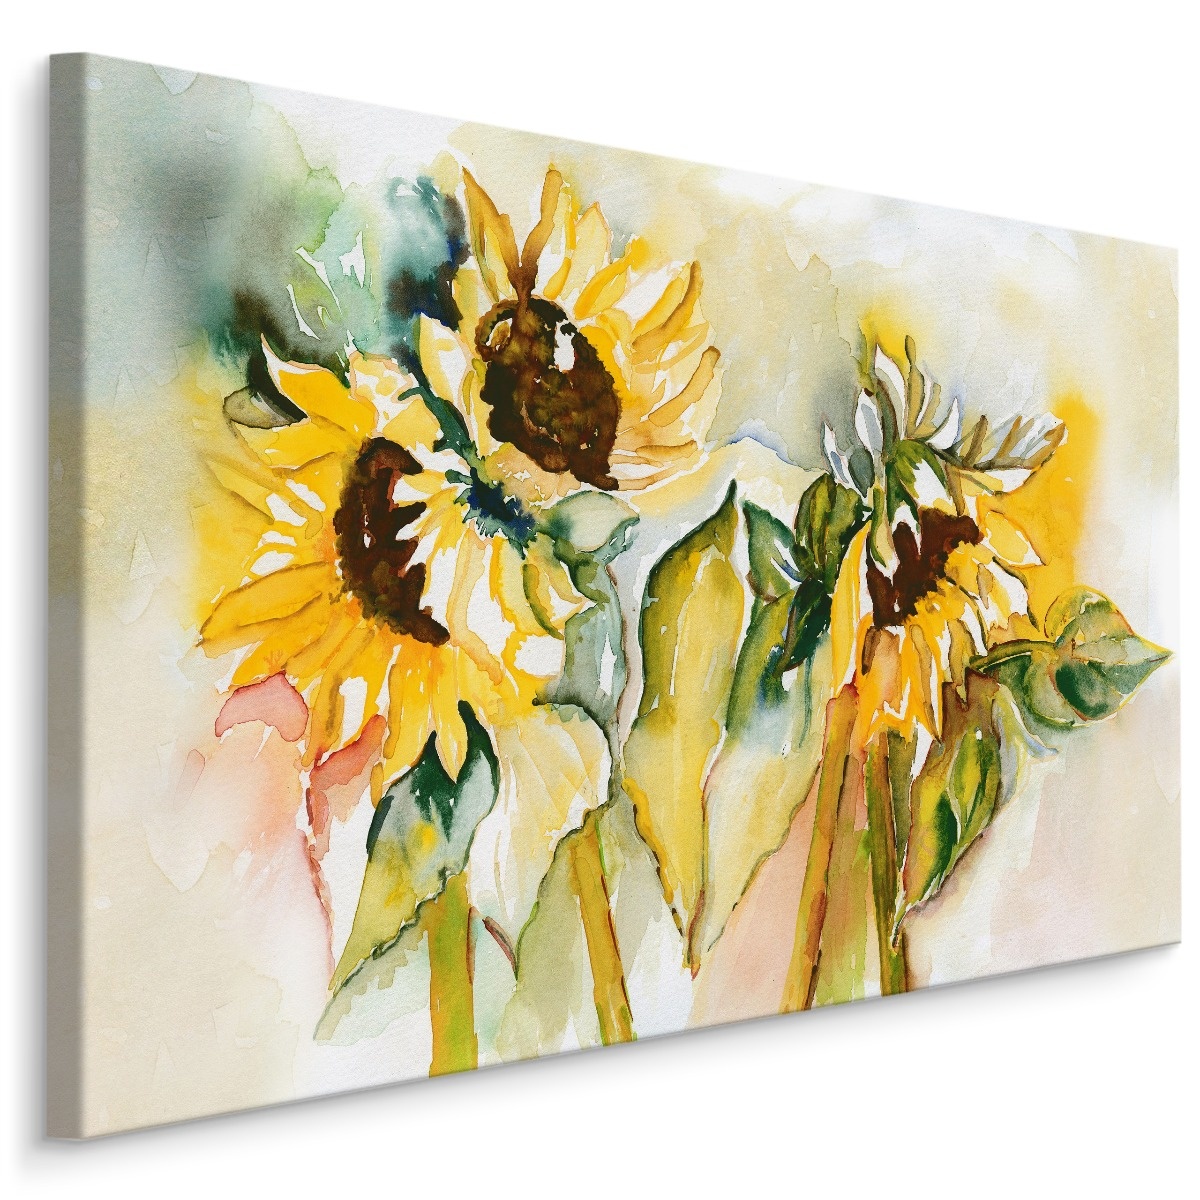 Schilderij - Zonnebloemen, 5 maten, Premium print op canvas